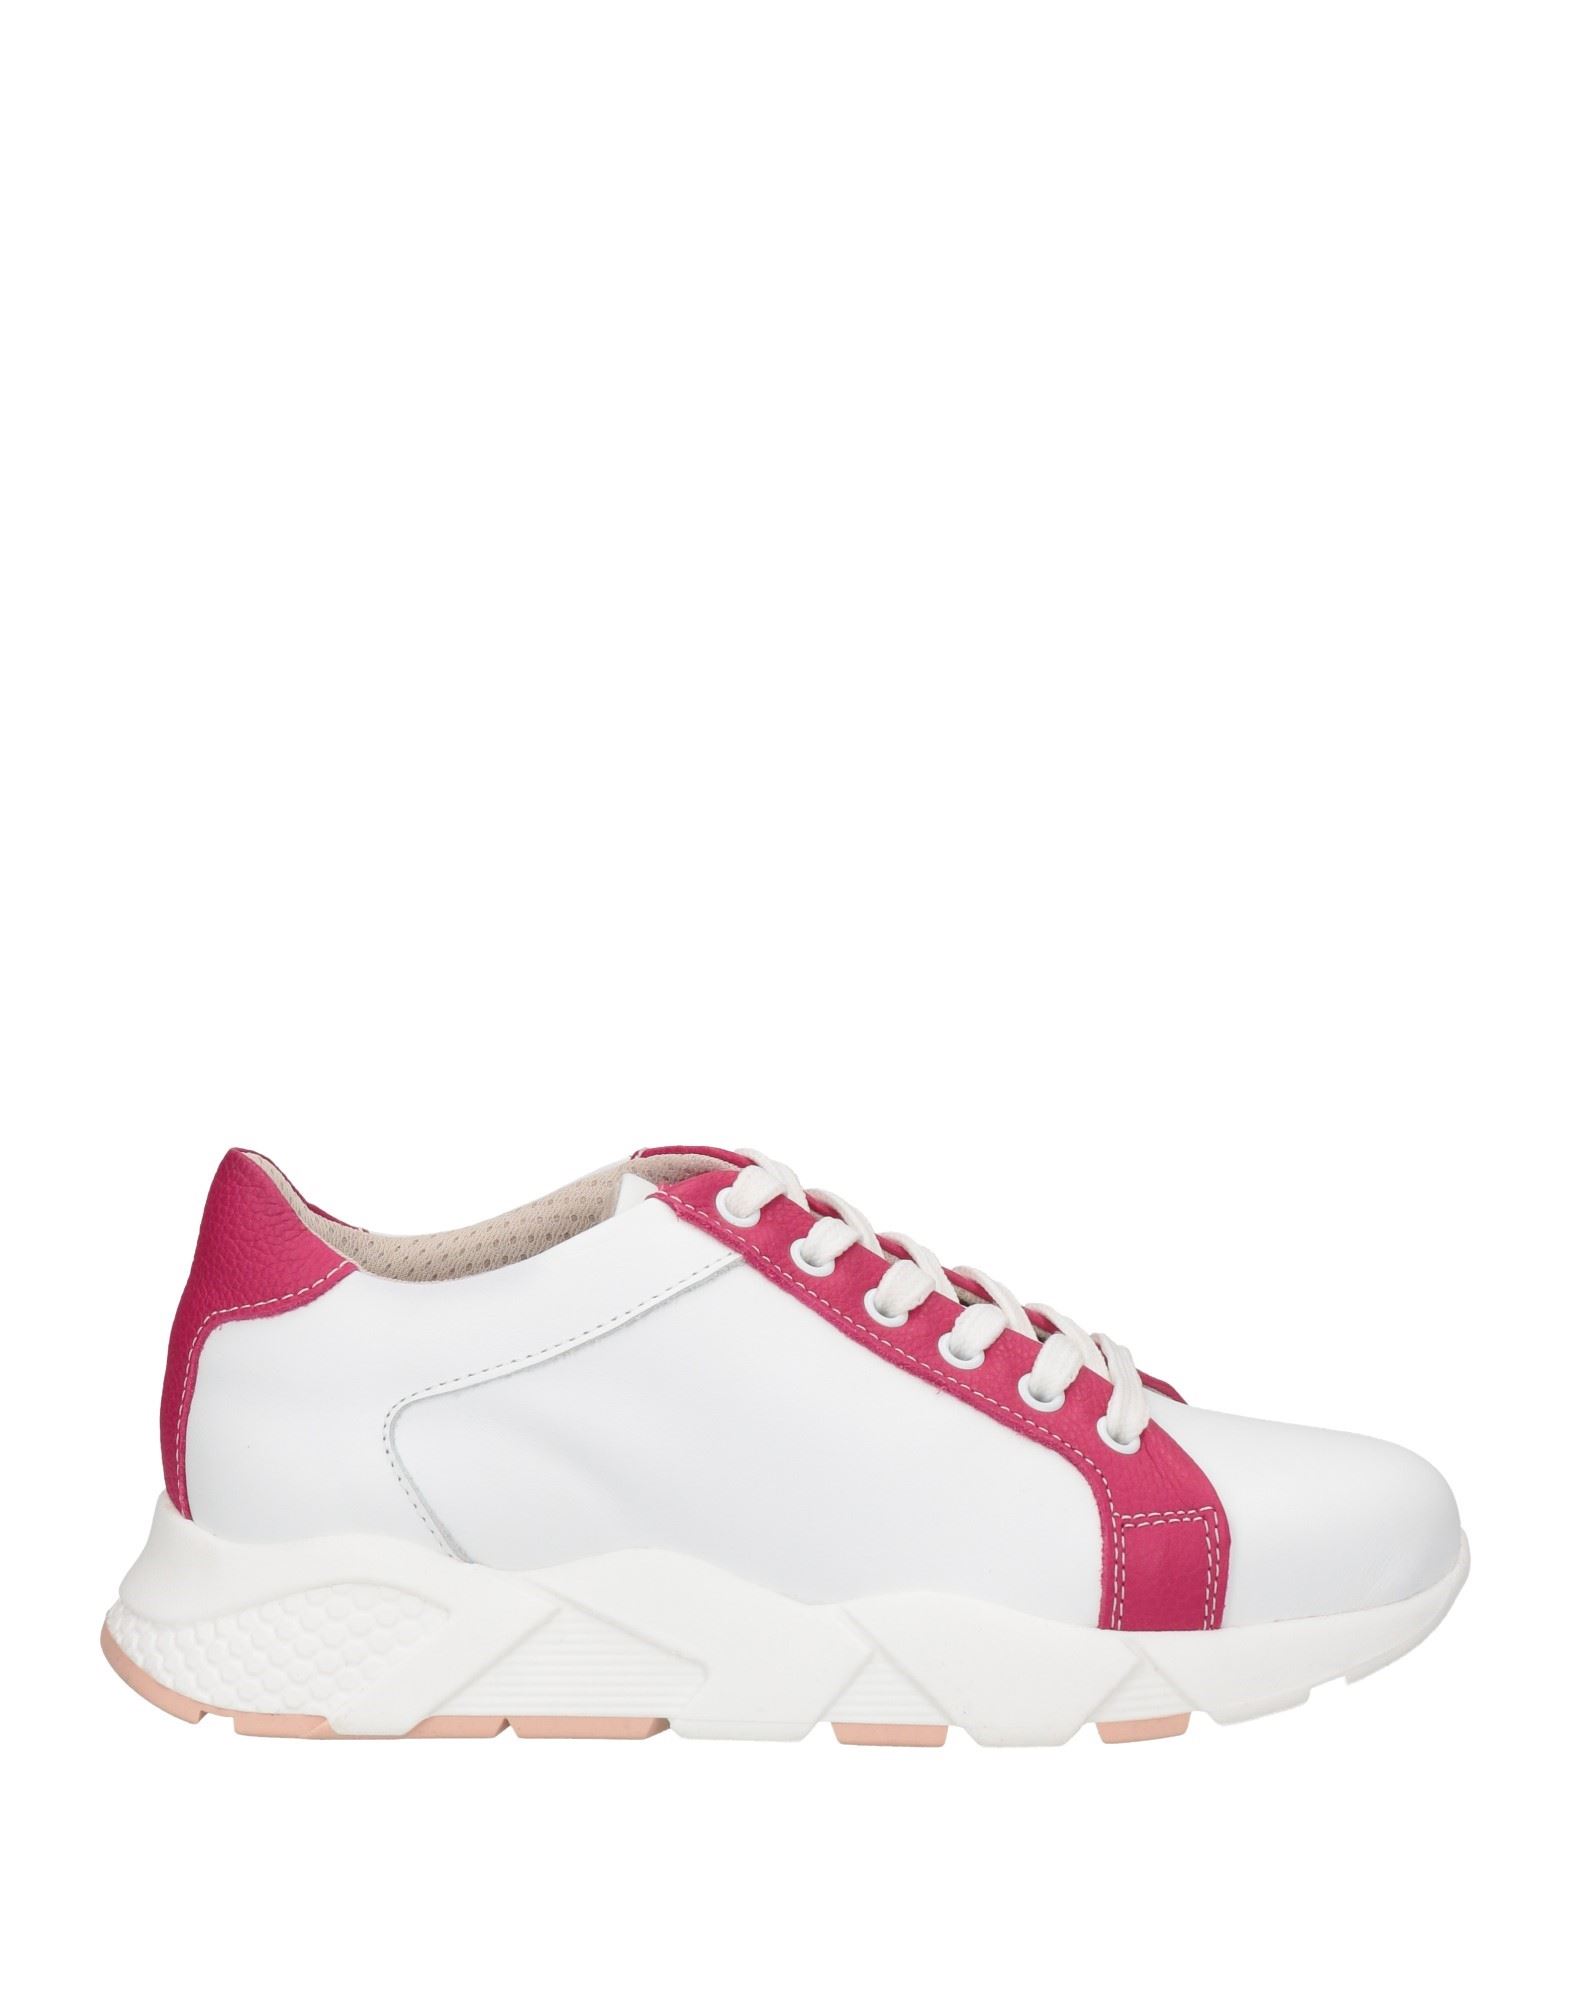 Stele Sneakers In Pink